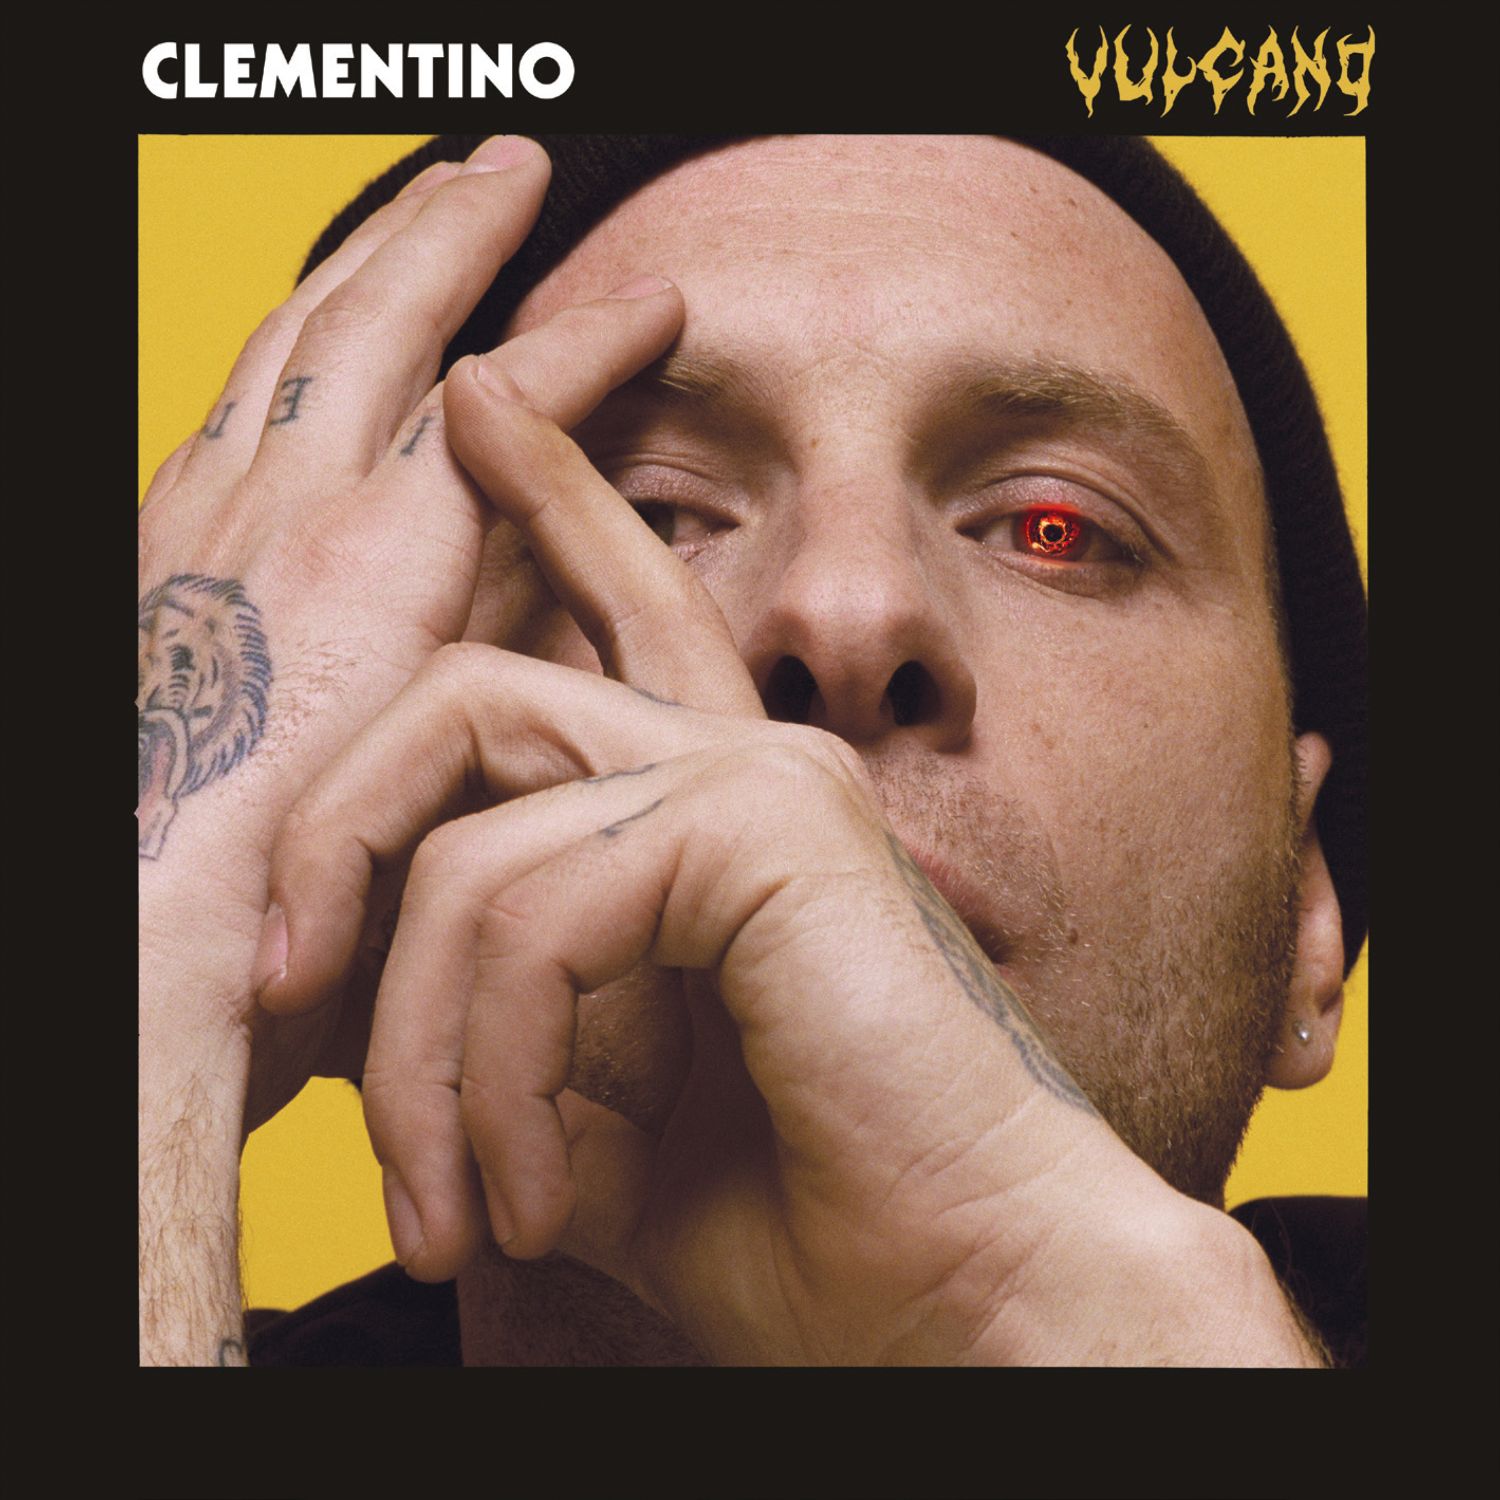 Clementino_vulcano - cover album